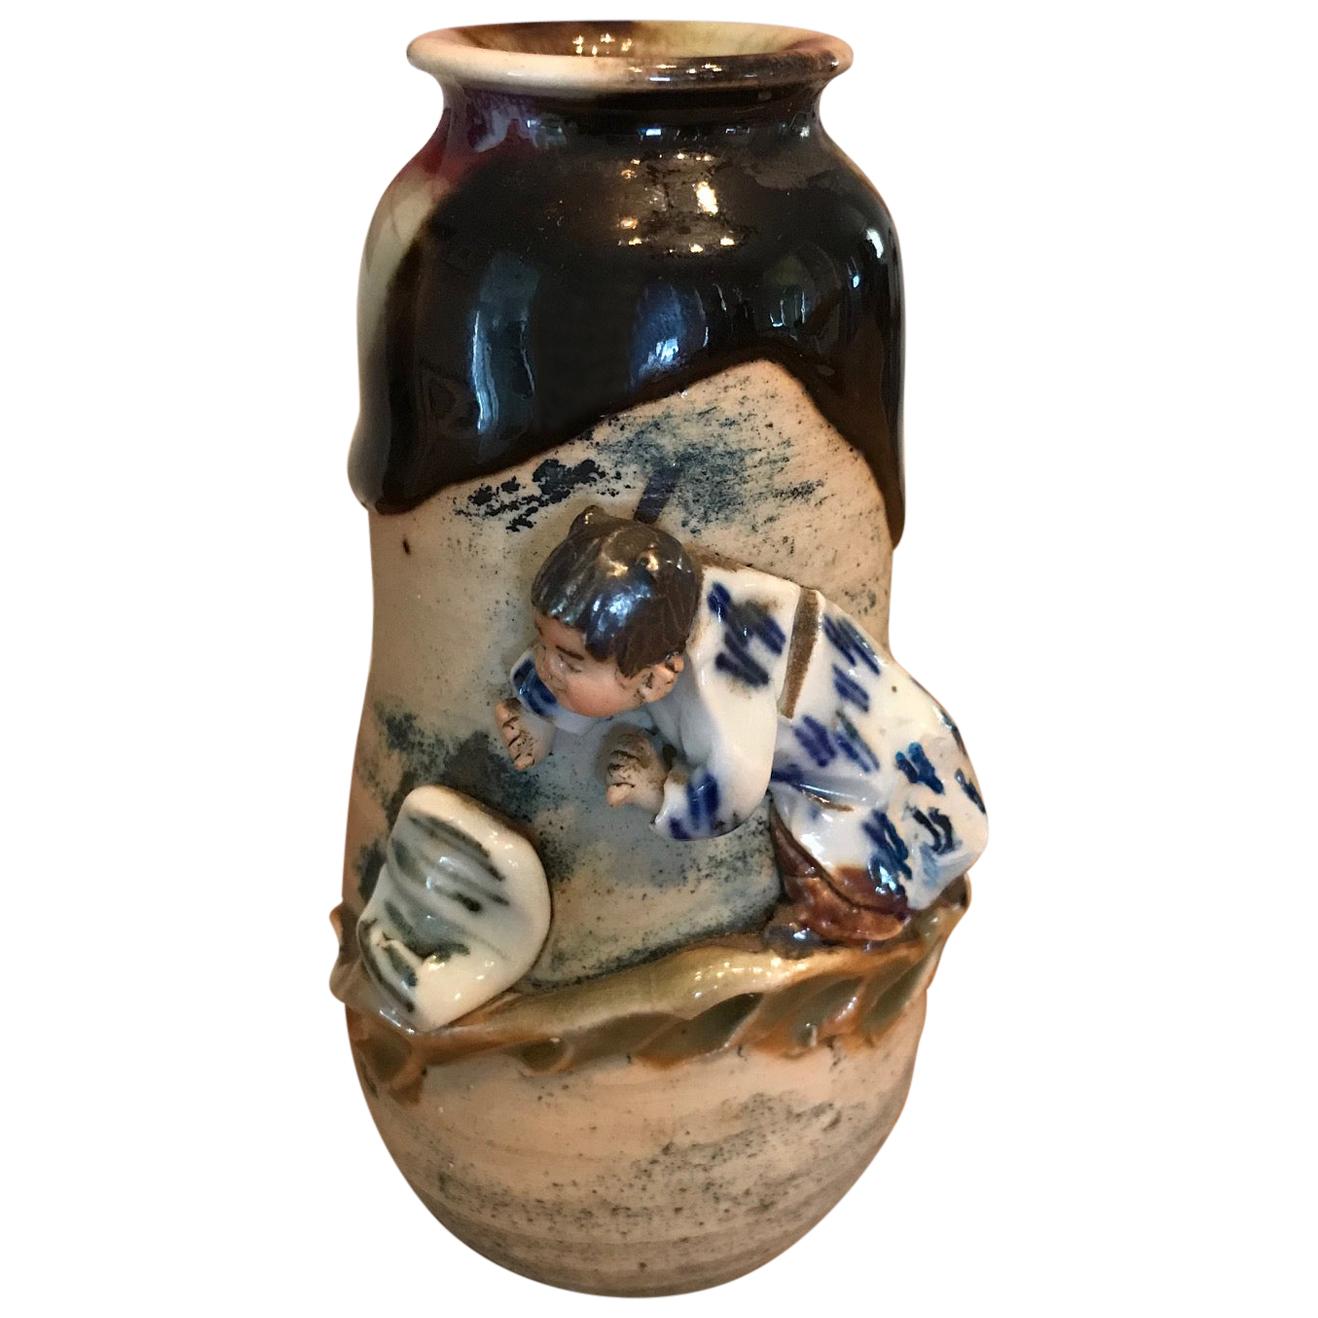 Sumida Gawa Signed Ryosai Japanese Pottery Ceramic Glazed Vase, Early 1900s